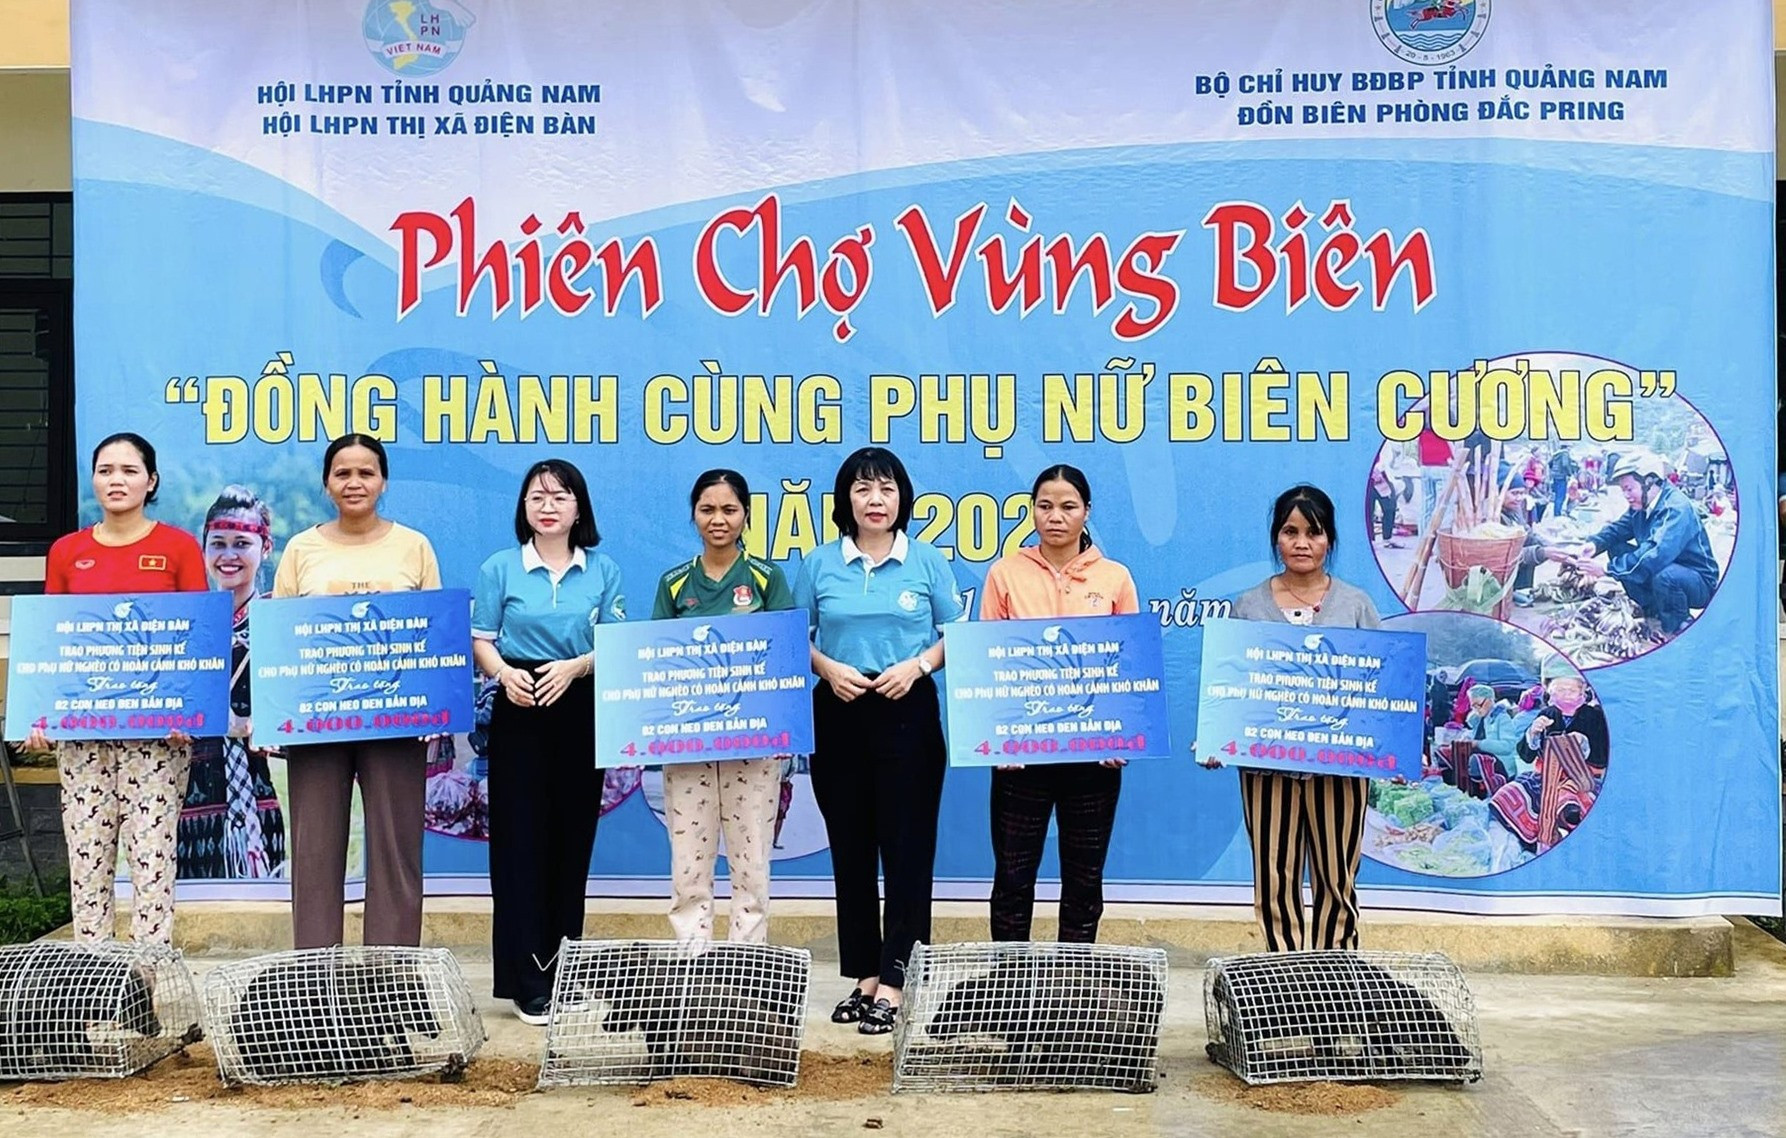 Hội LHPN thị xã Điện Bàn trao phương tiện sinh kế cho 5 hộ phụ nữ nghèo.